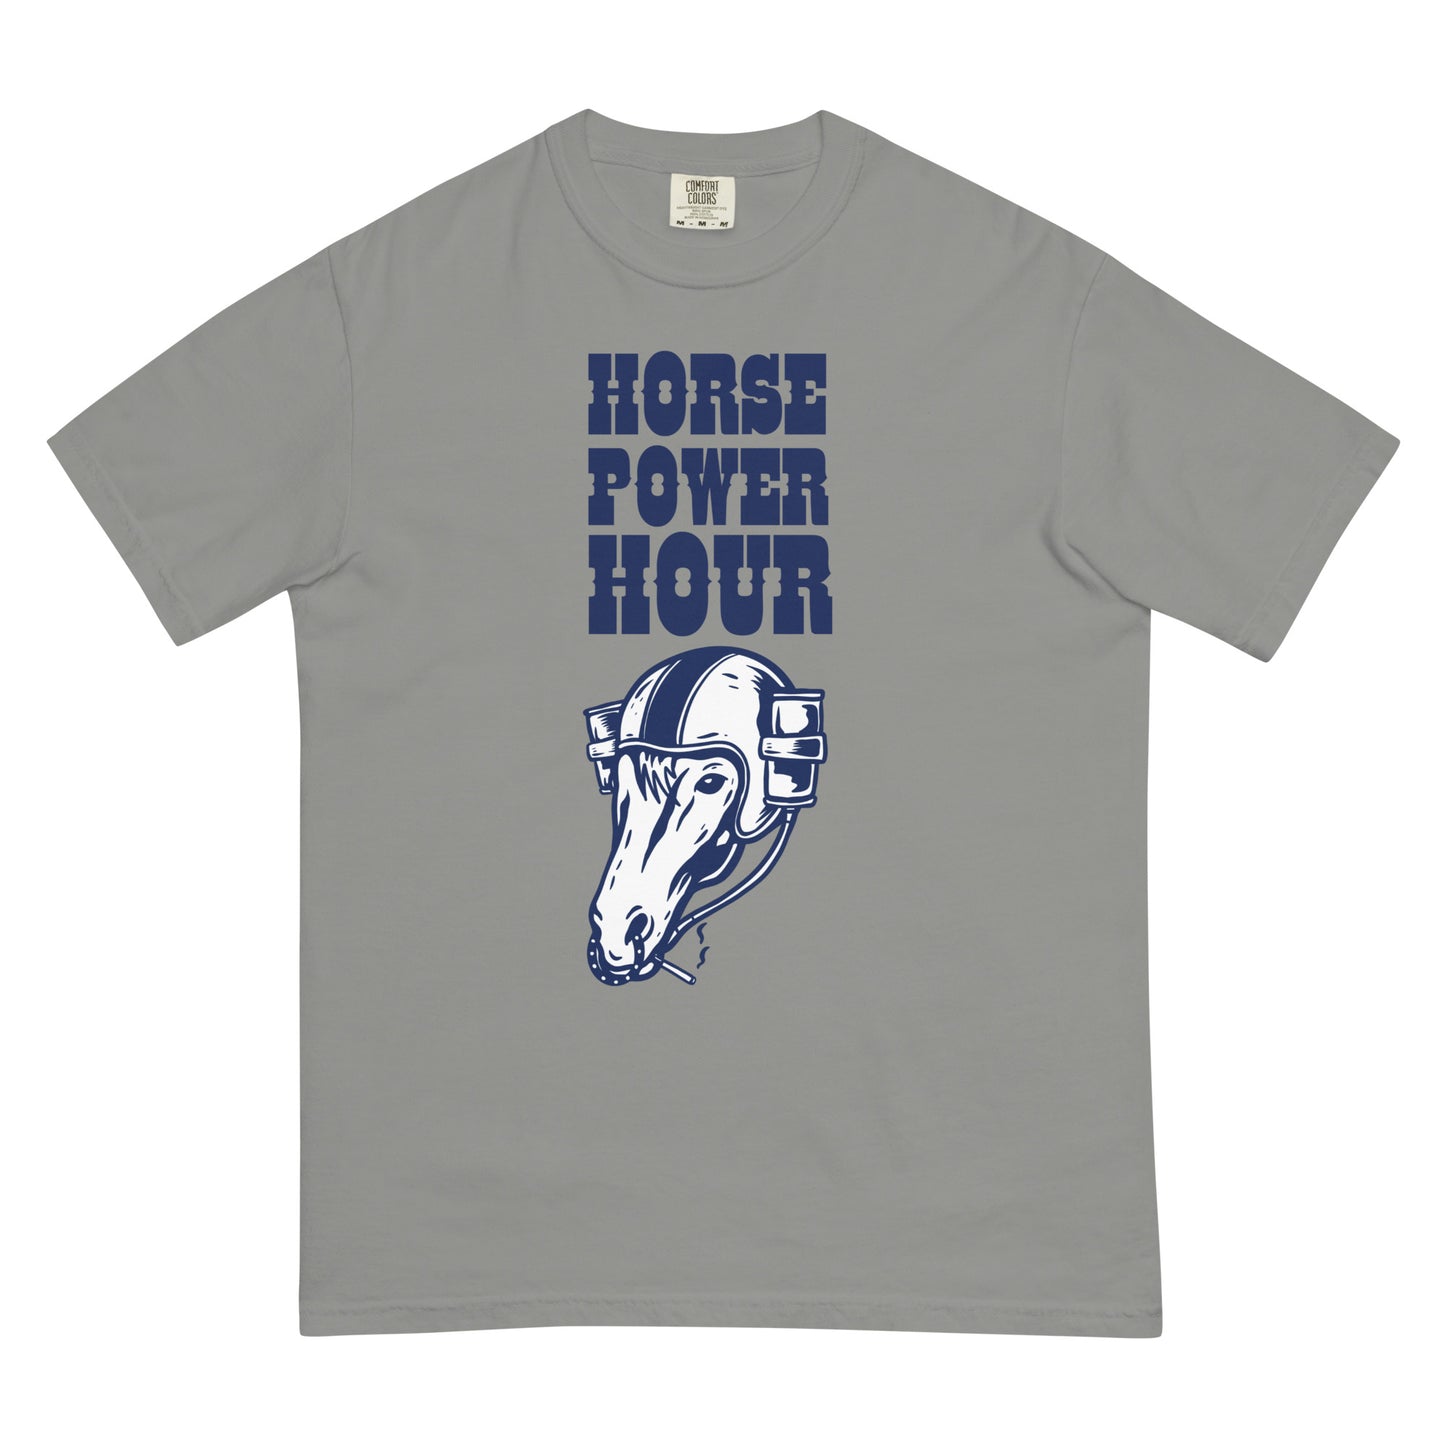 Horse Power Hour T-Shirt